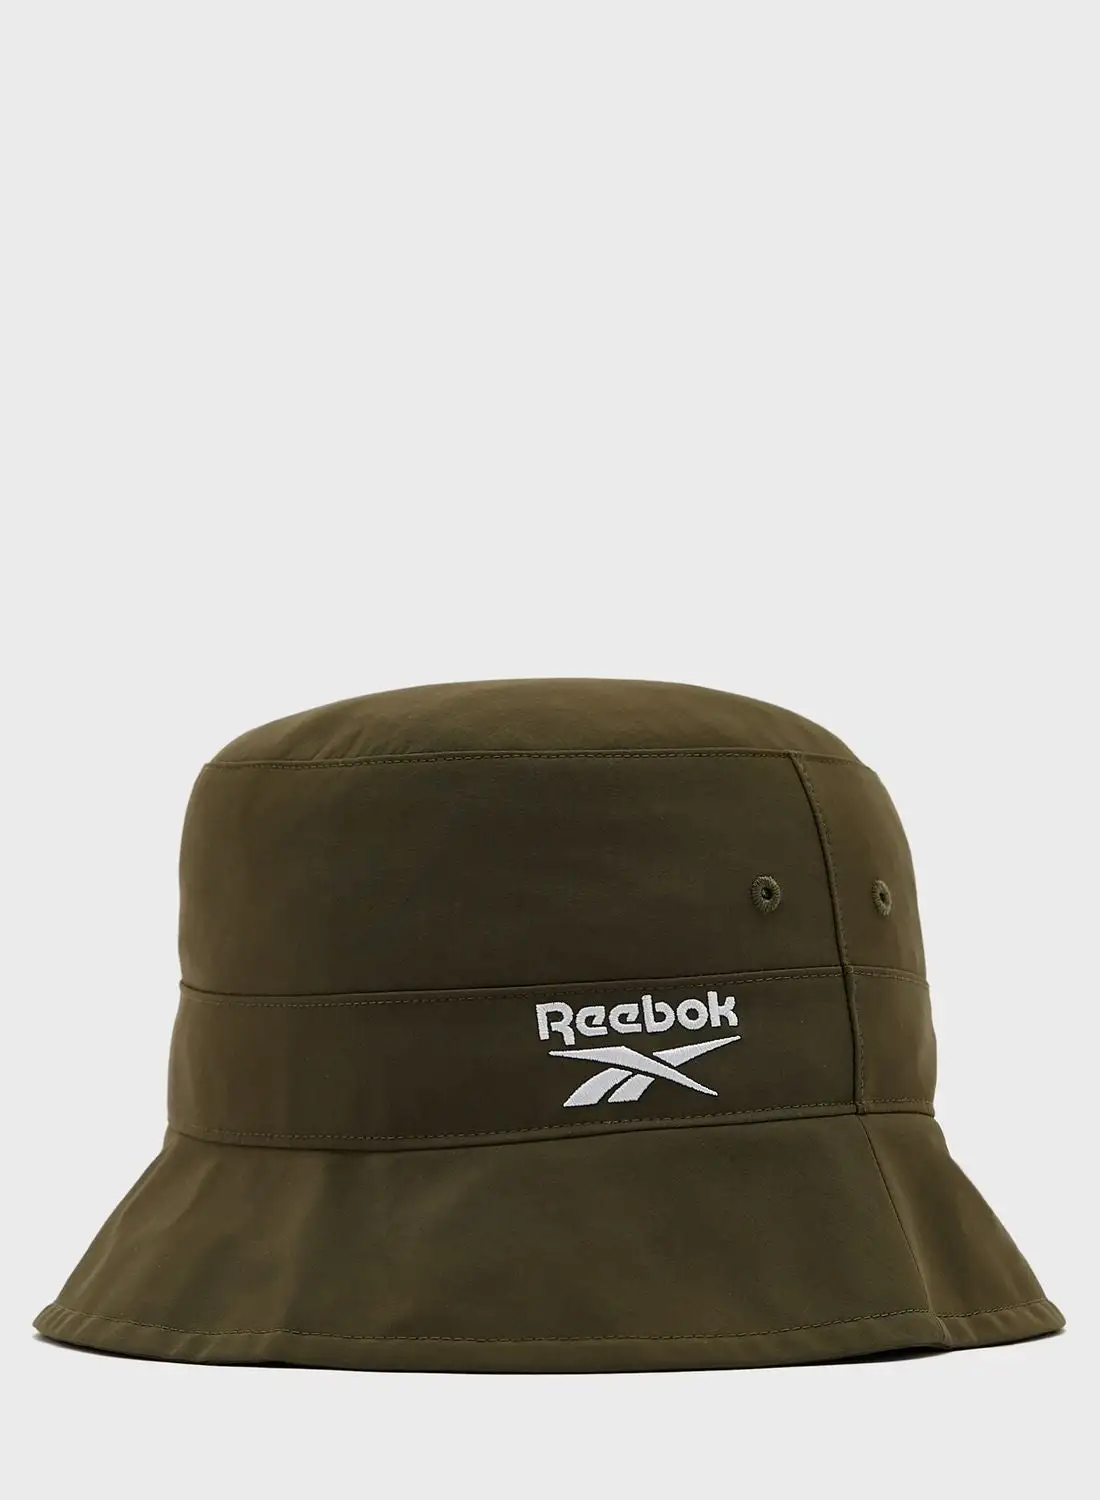 قبعة دلو كلاسيك فاونديشن من ريبوك